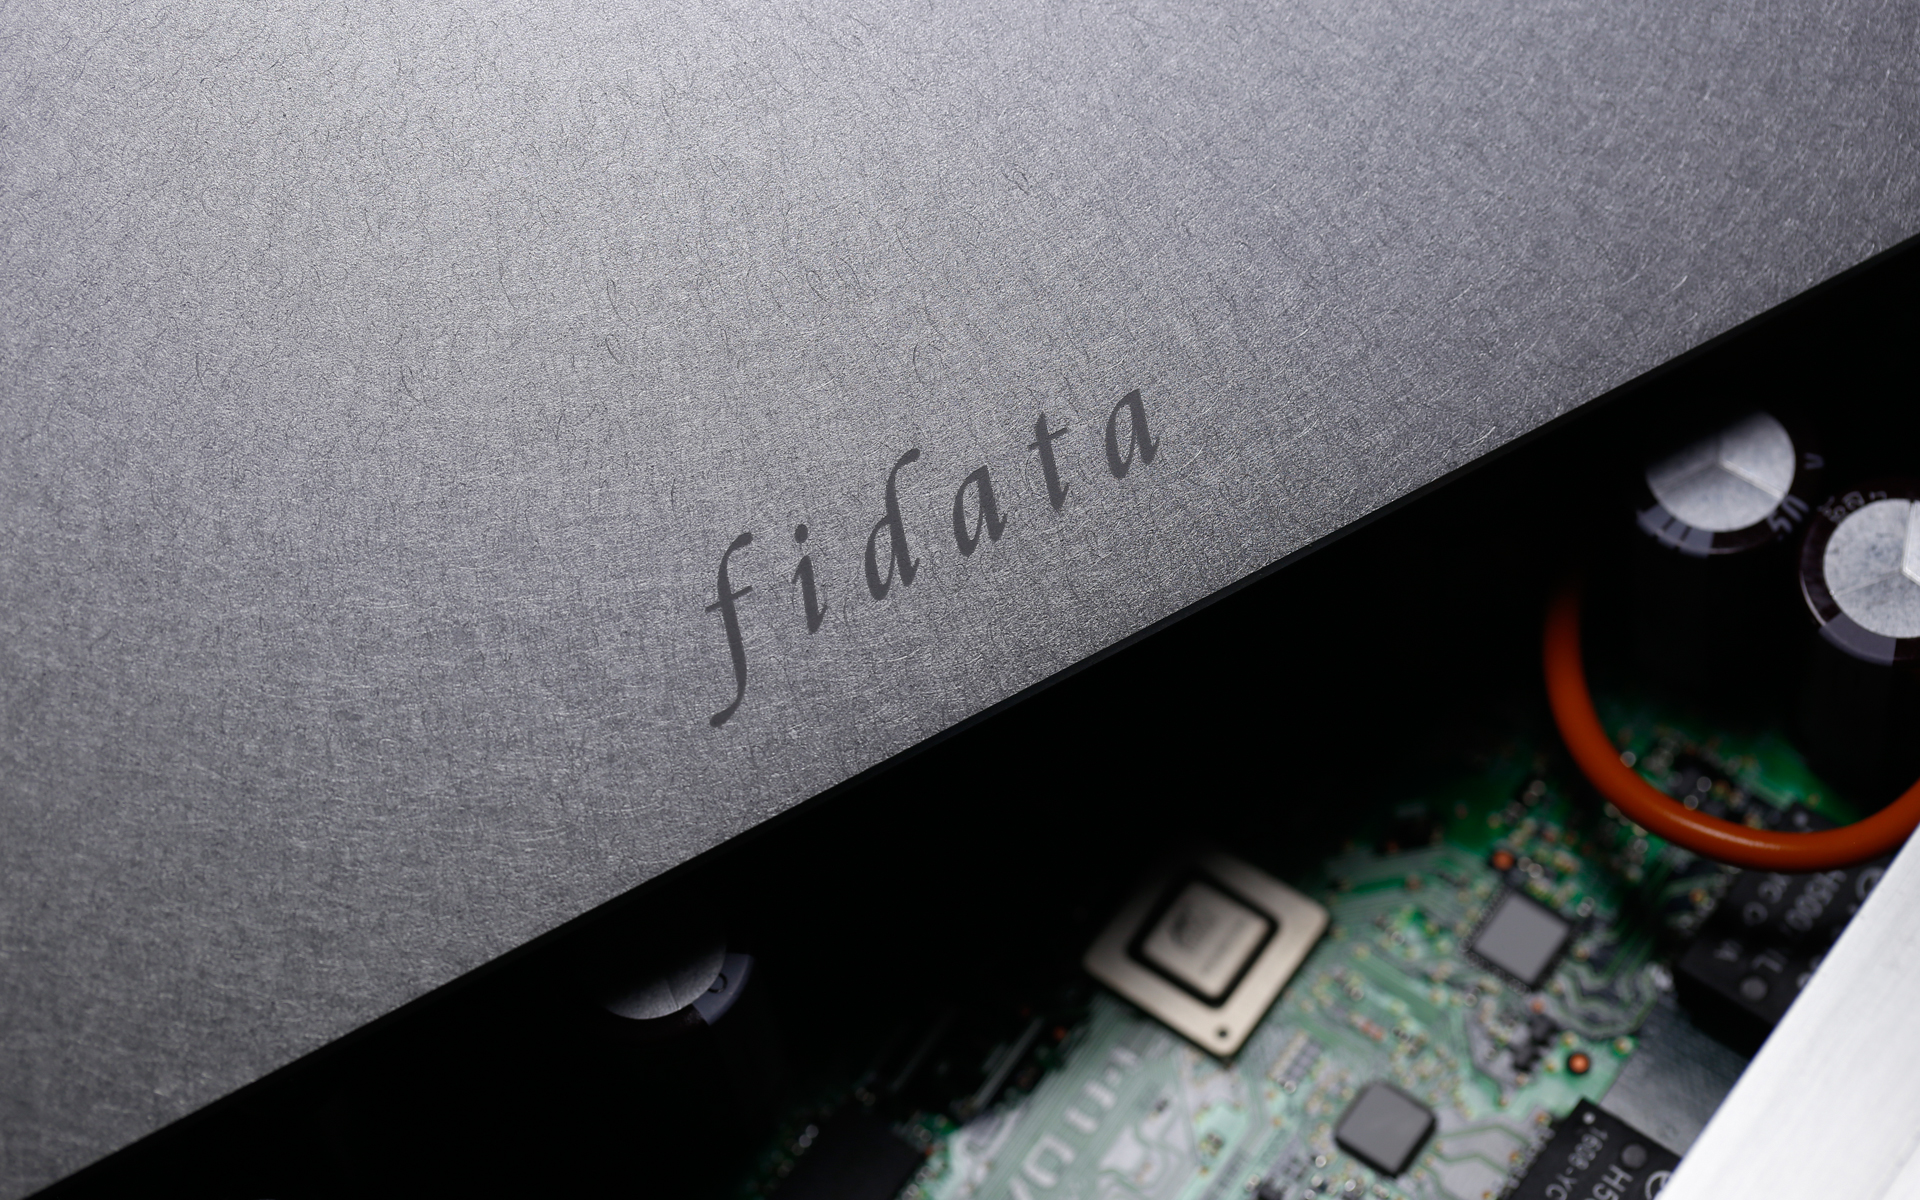 Fidata HFAS1-S10U – HiFi Knights